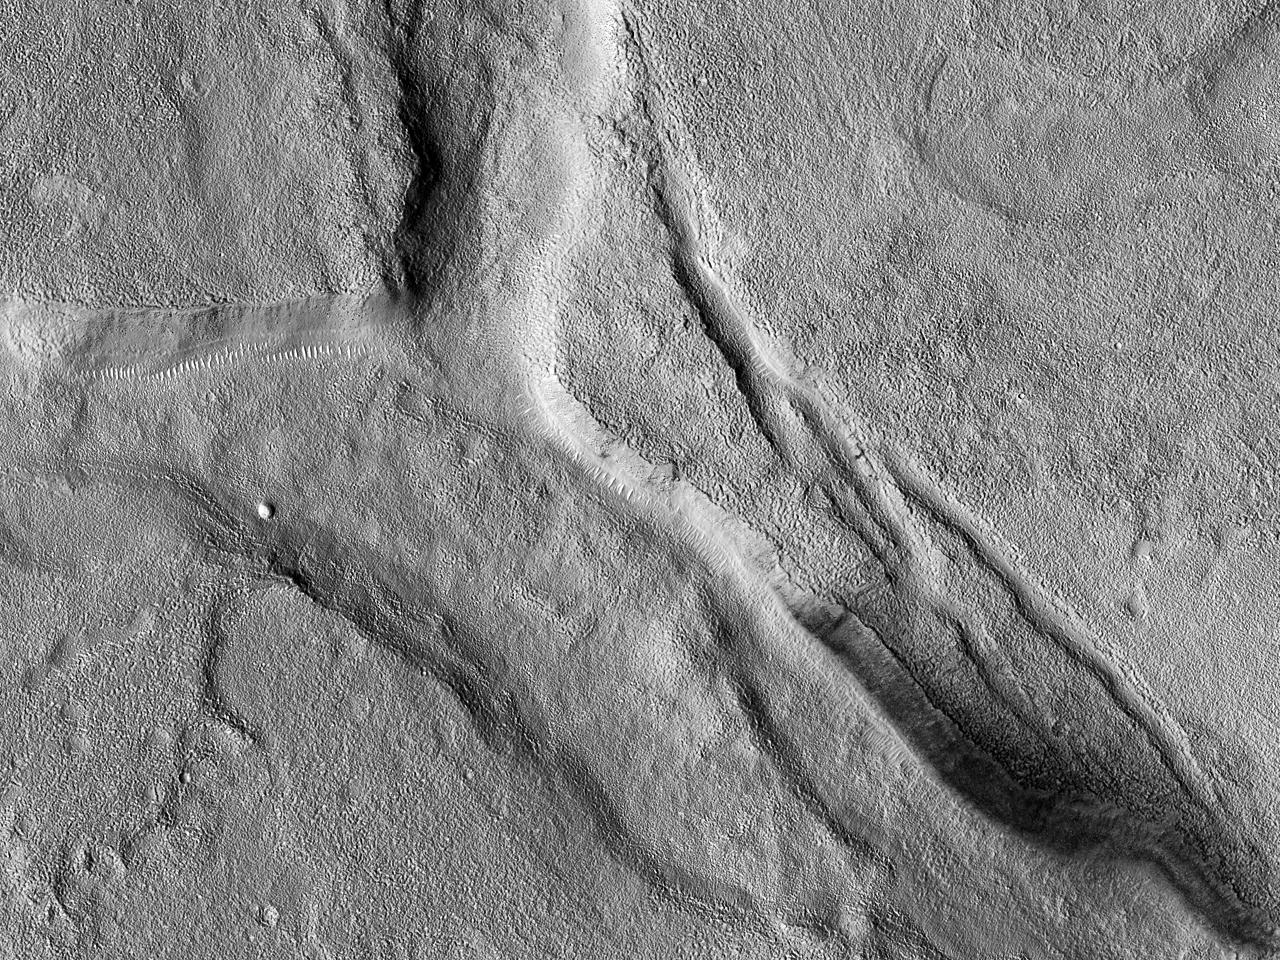 Fractures aUtopia Planitia